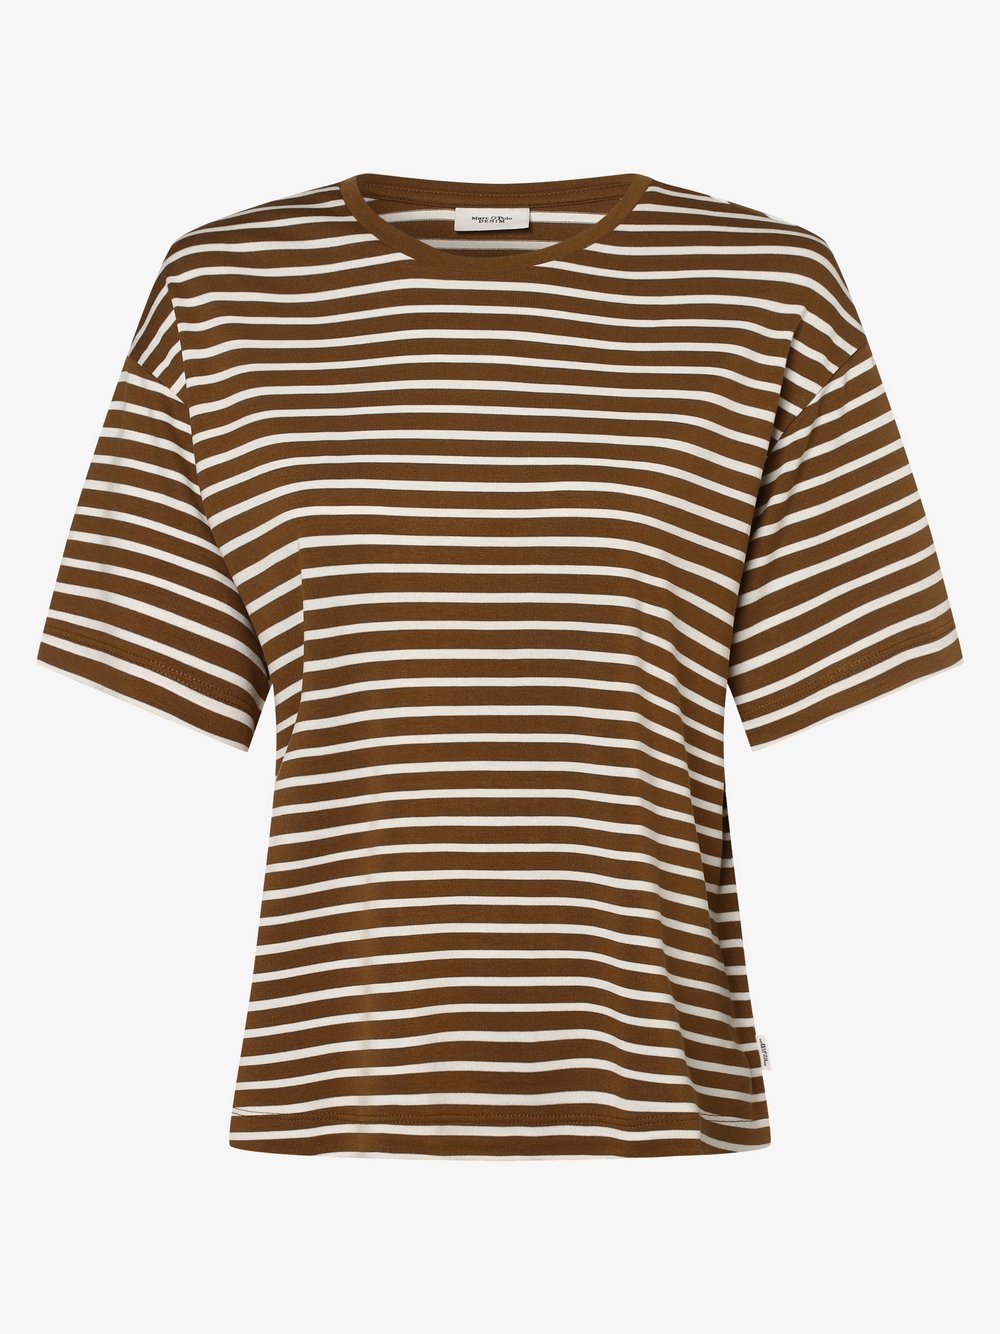 Marc O'Polo Denim - T-shirt damski, brązowy